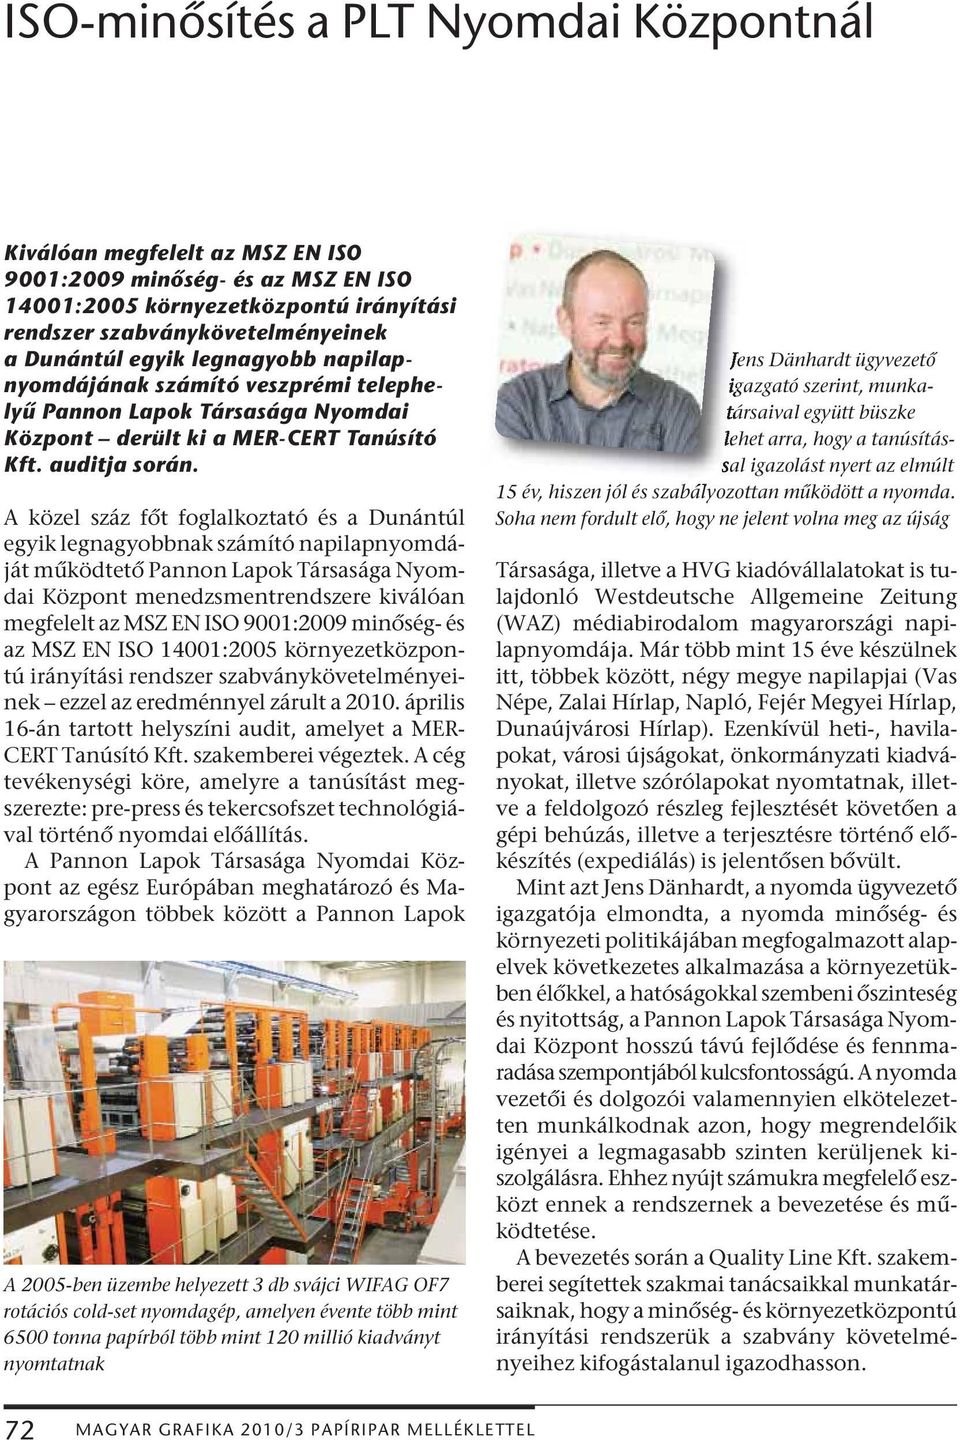 A közel száz főt foglalkoztató és a Dunántúl egyik legnagyobbnak számító napilapnyomdáját működtető Pannon Lapok Társasága Nyomdai Központ menedzsmentrendszere kiválóan megfelelt az MSZ EN ISO